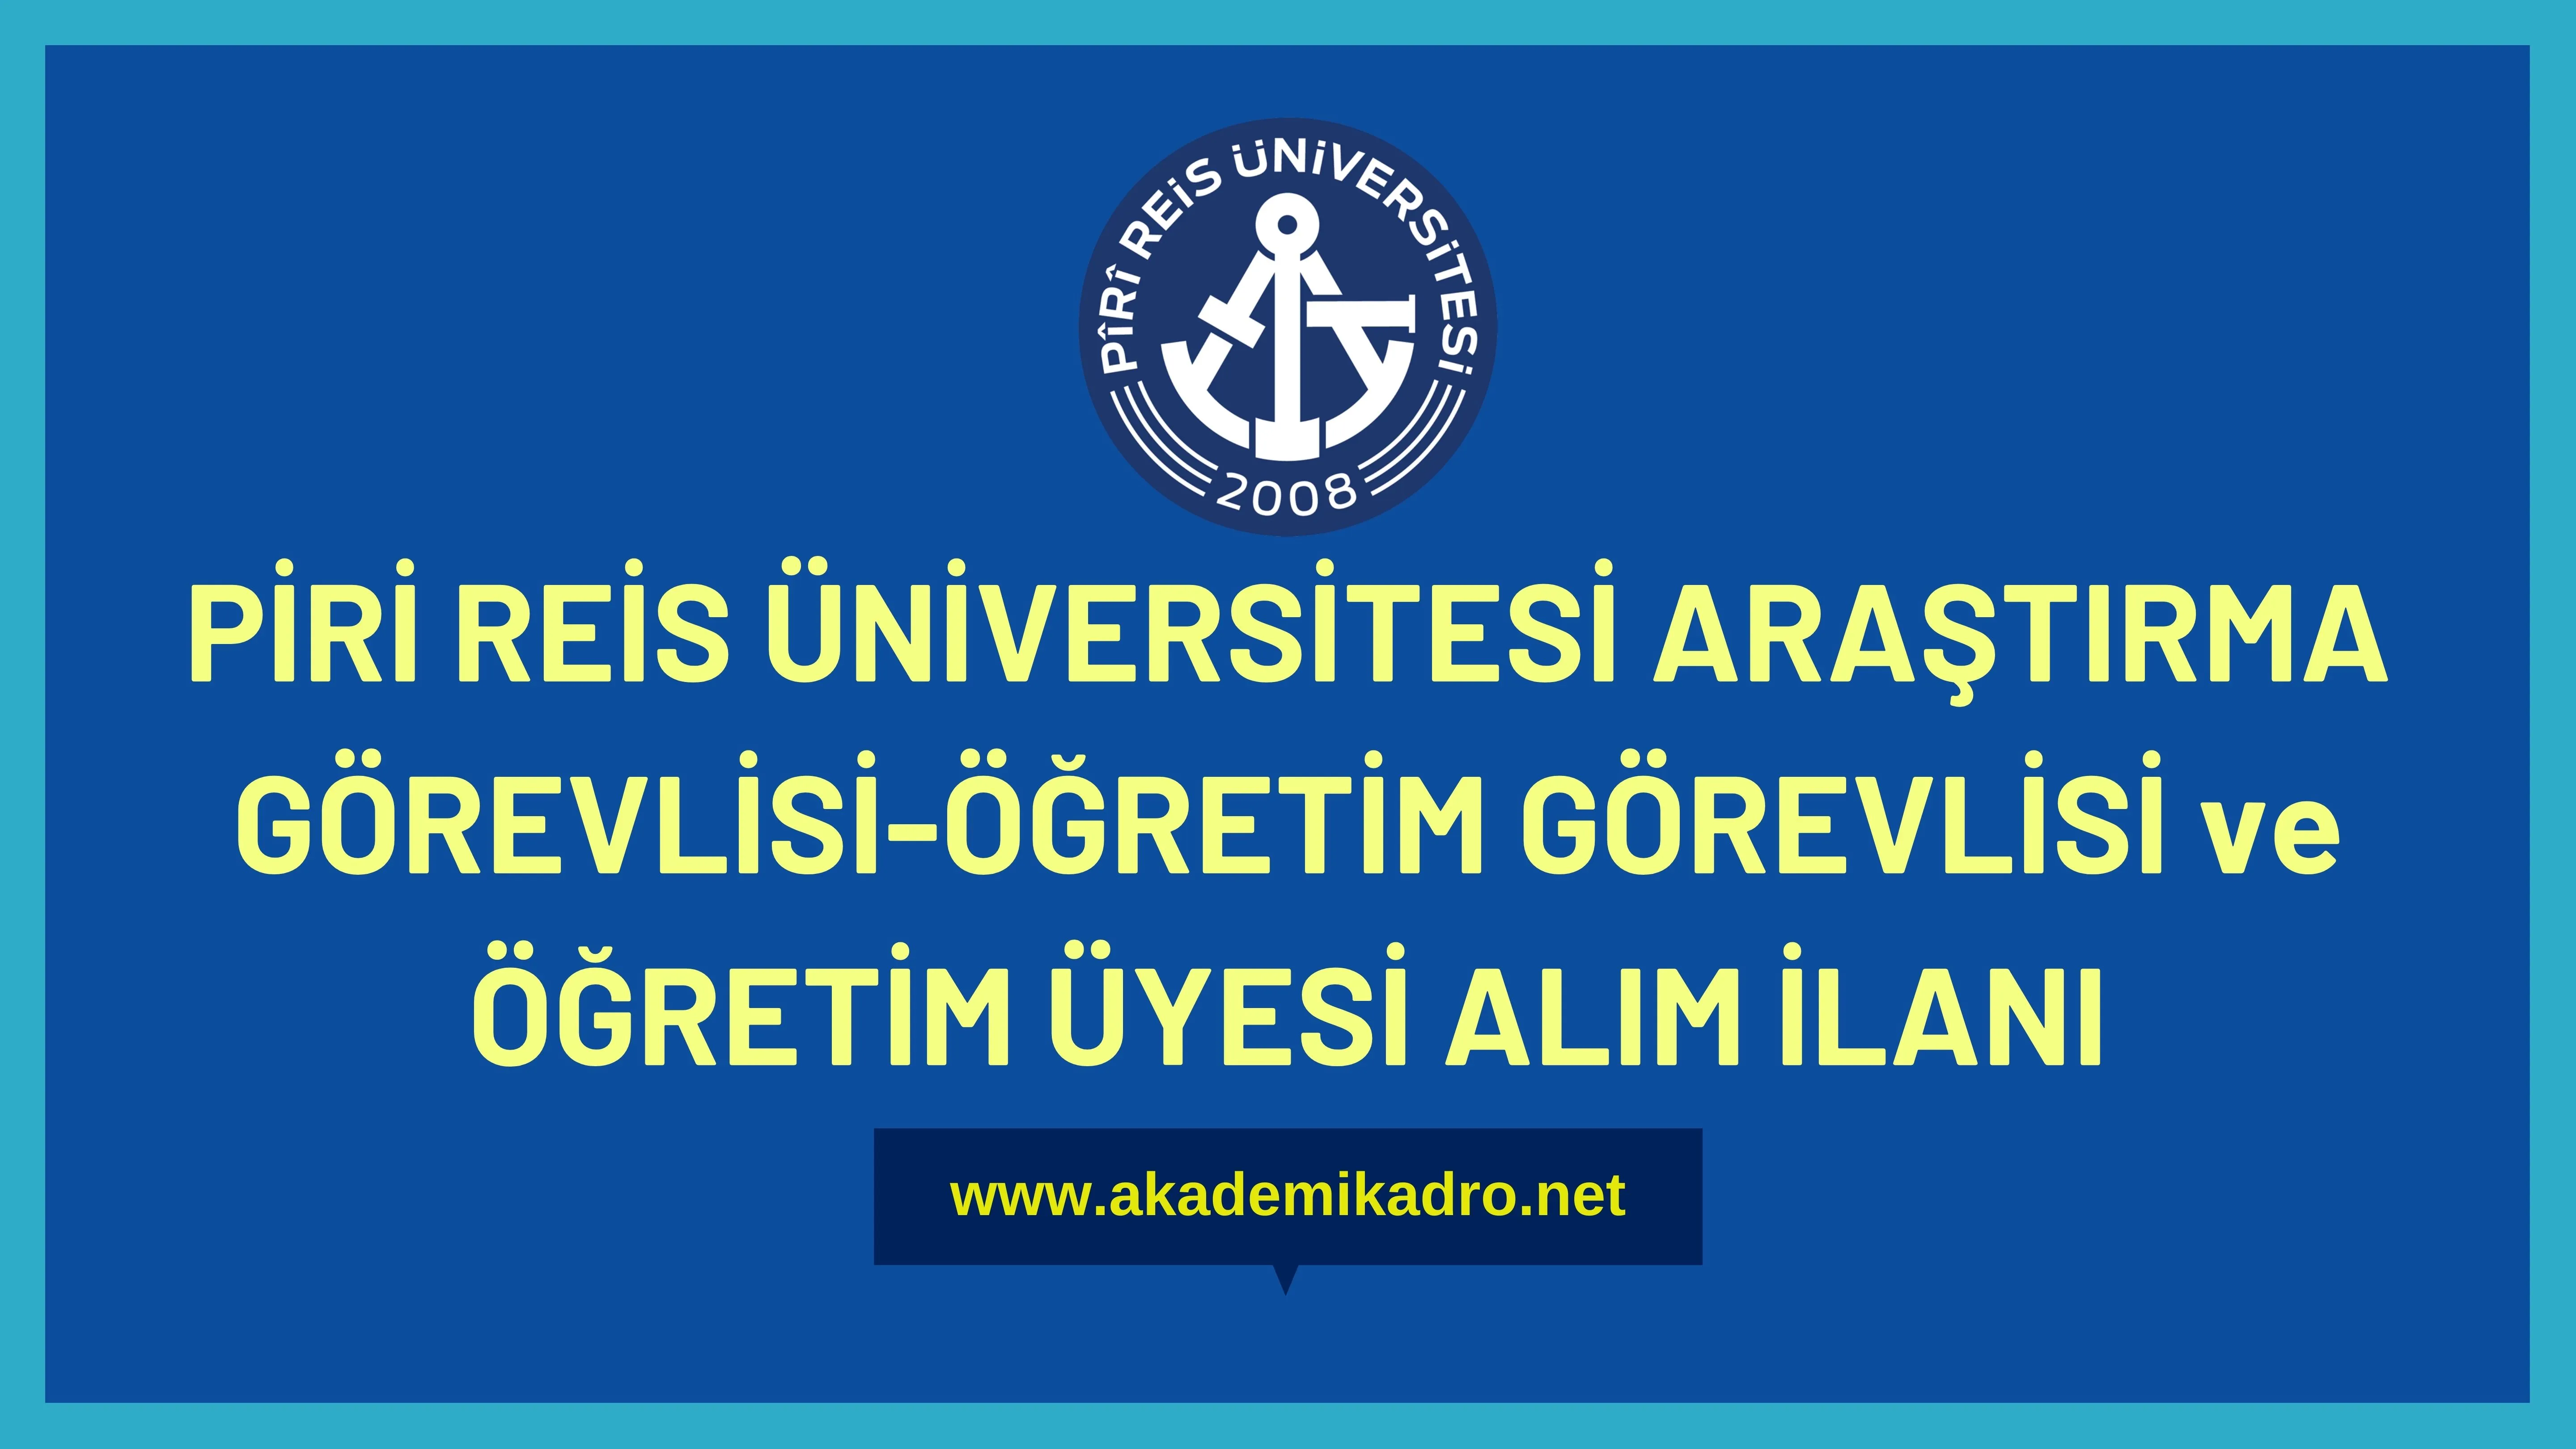 Piri Reis Üniversitesi 6 Öğretim görevlisi, 8 Araştırma görevlisi ve 25 Öğretim üyesi alacak.